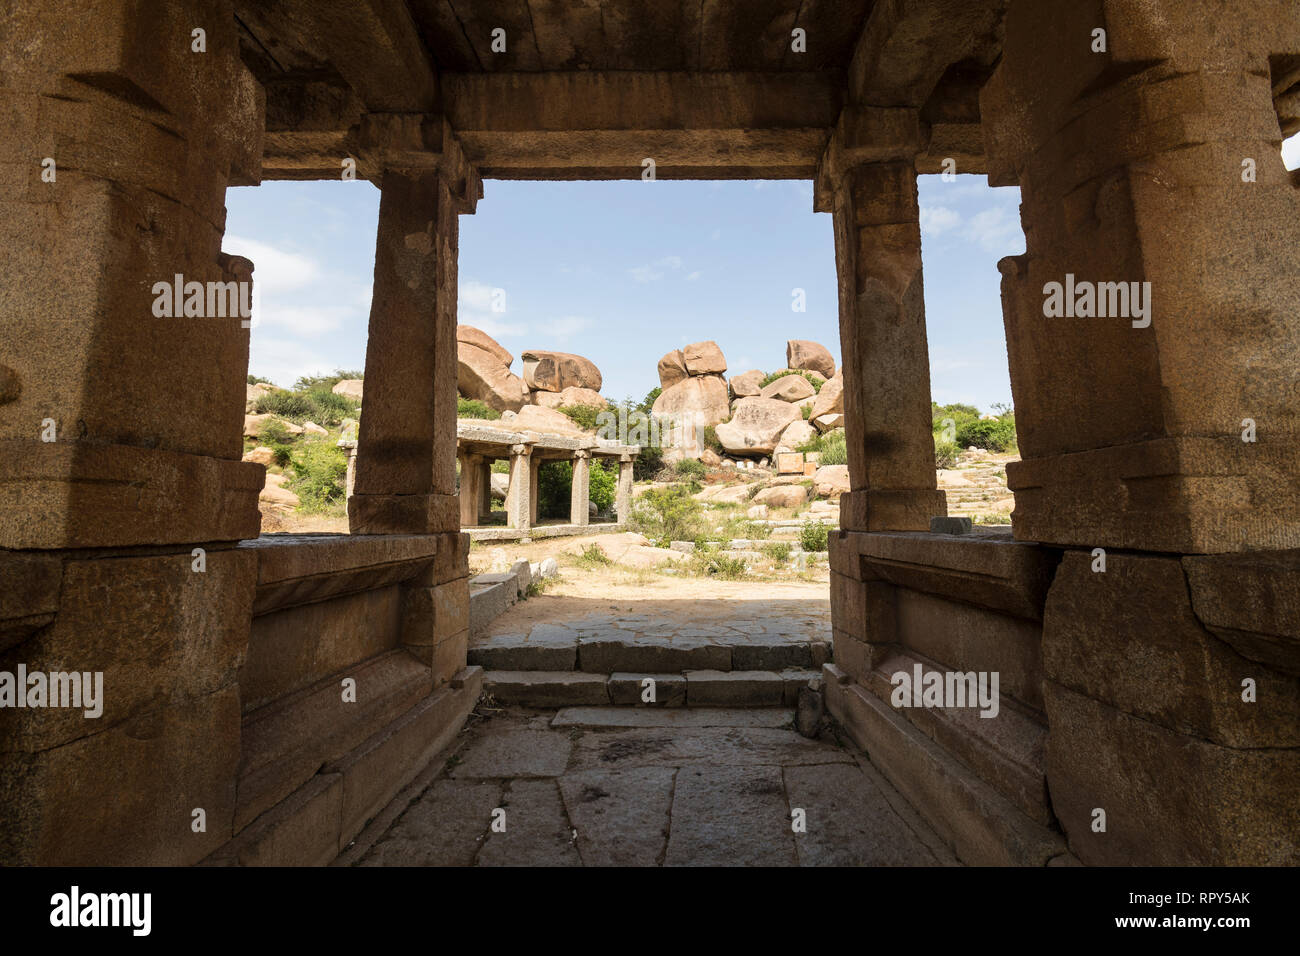 Eine typische Eingang zu einem Tempel oder solche mit einem von Säulen getragenen Dach unten Besucher zu kühlen. Stockfoto